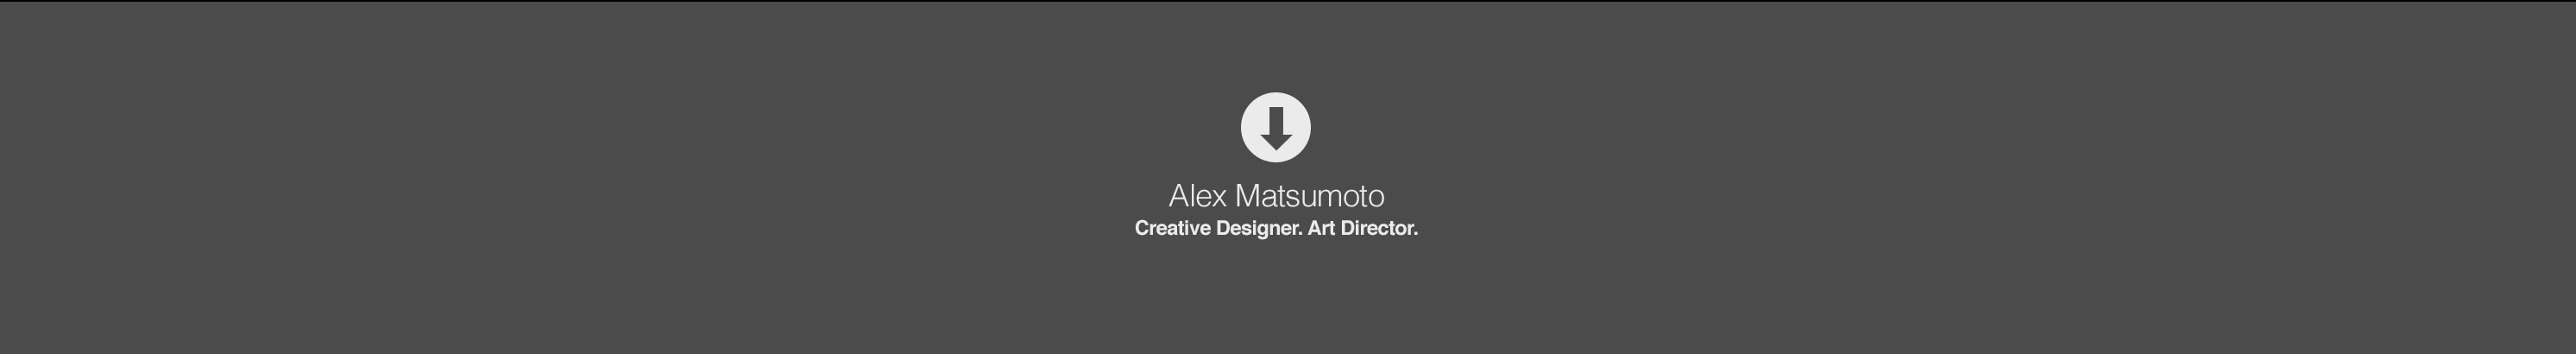 Alex Matsumotos profilbanner